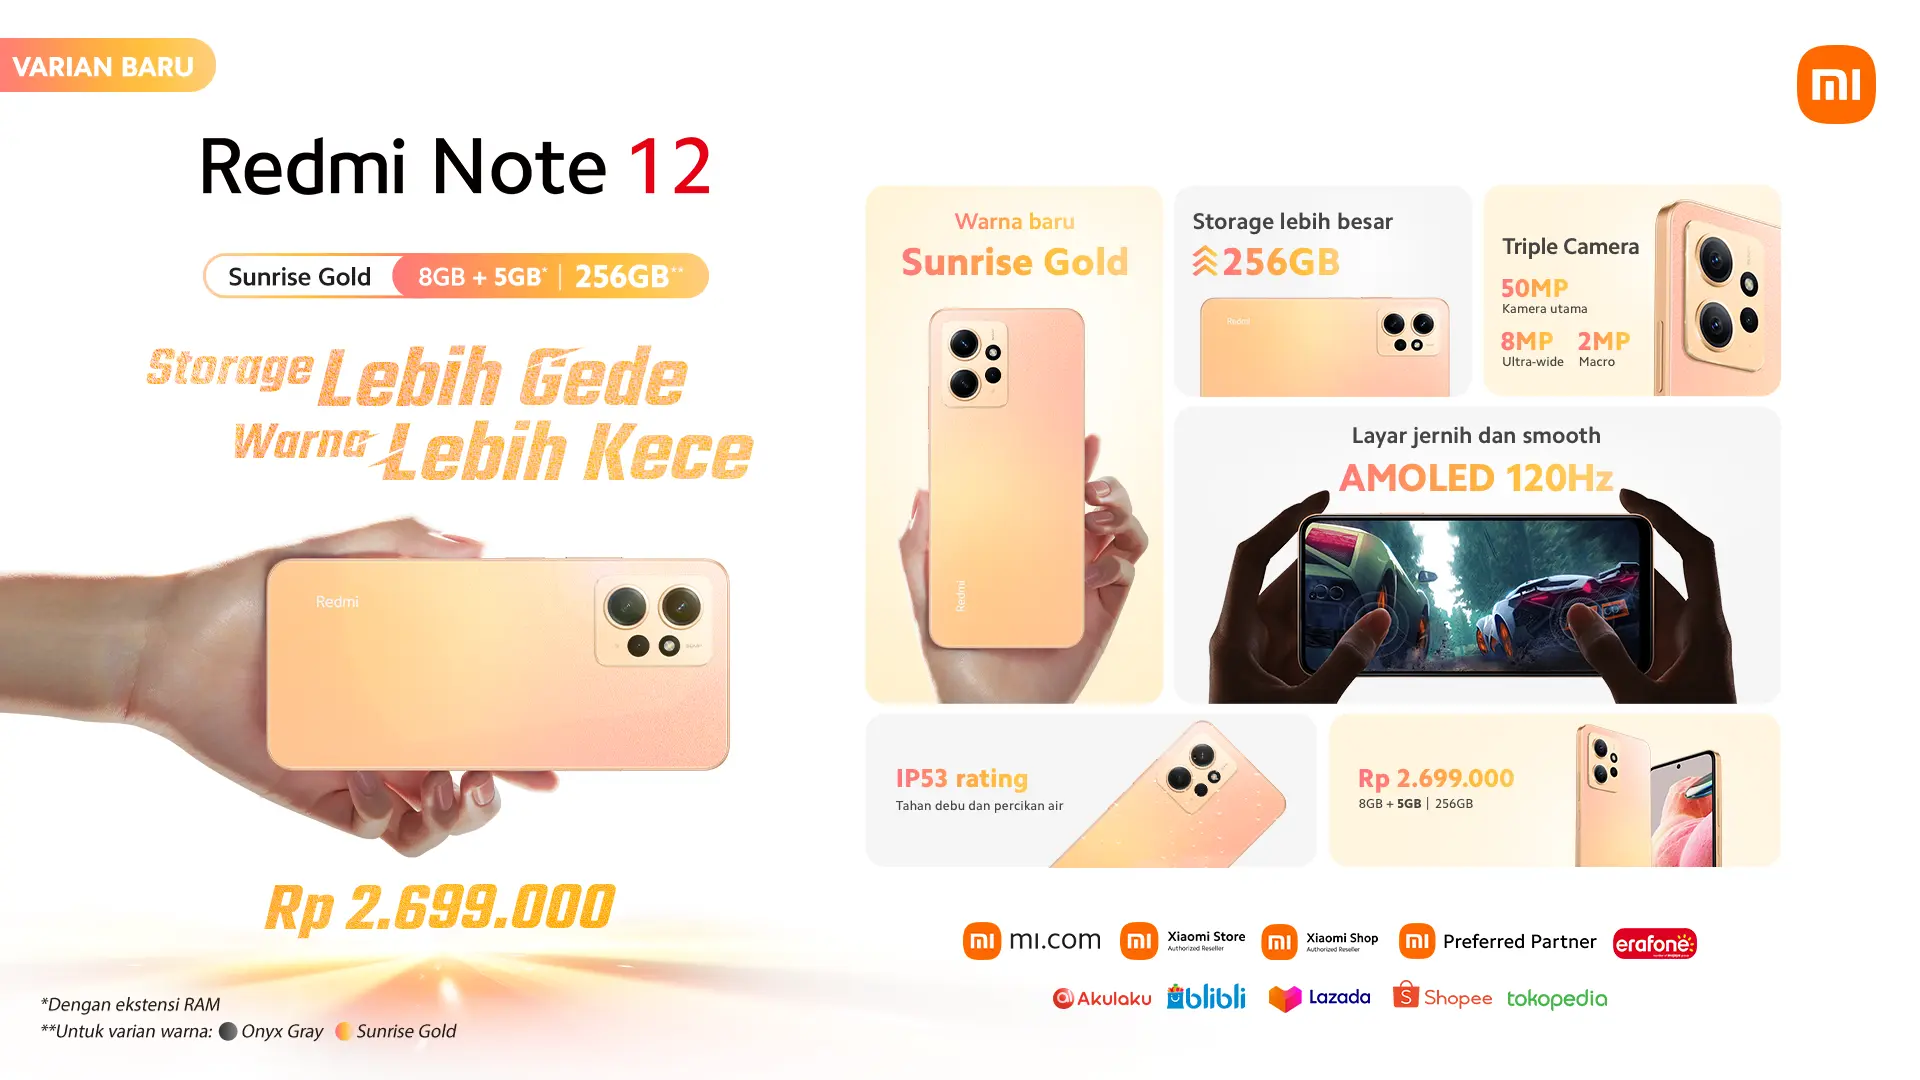 Redmi Note 12 Sunrise Gold hadir dengan harga Rp 2.699.000